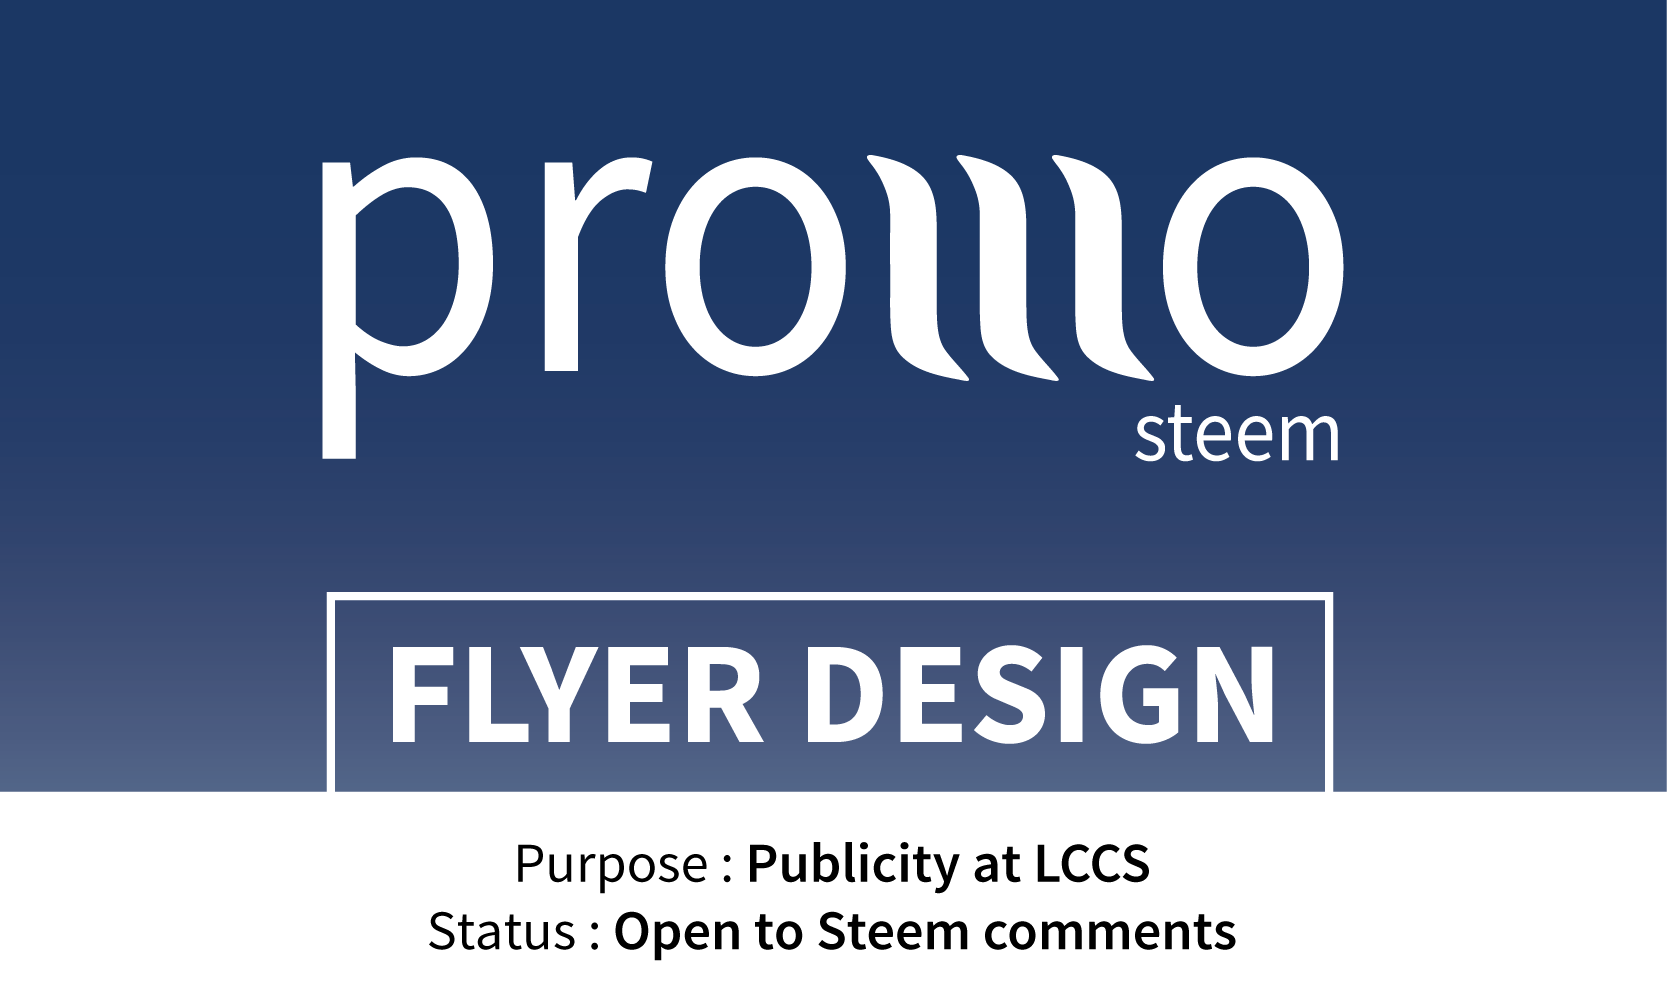 Promo-steem flyer design 14.03.18.png